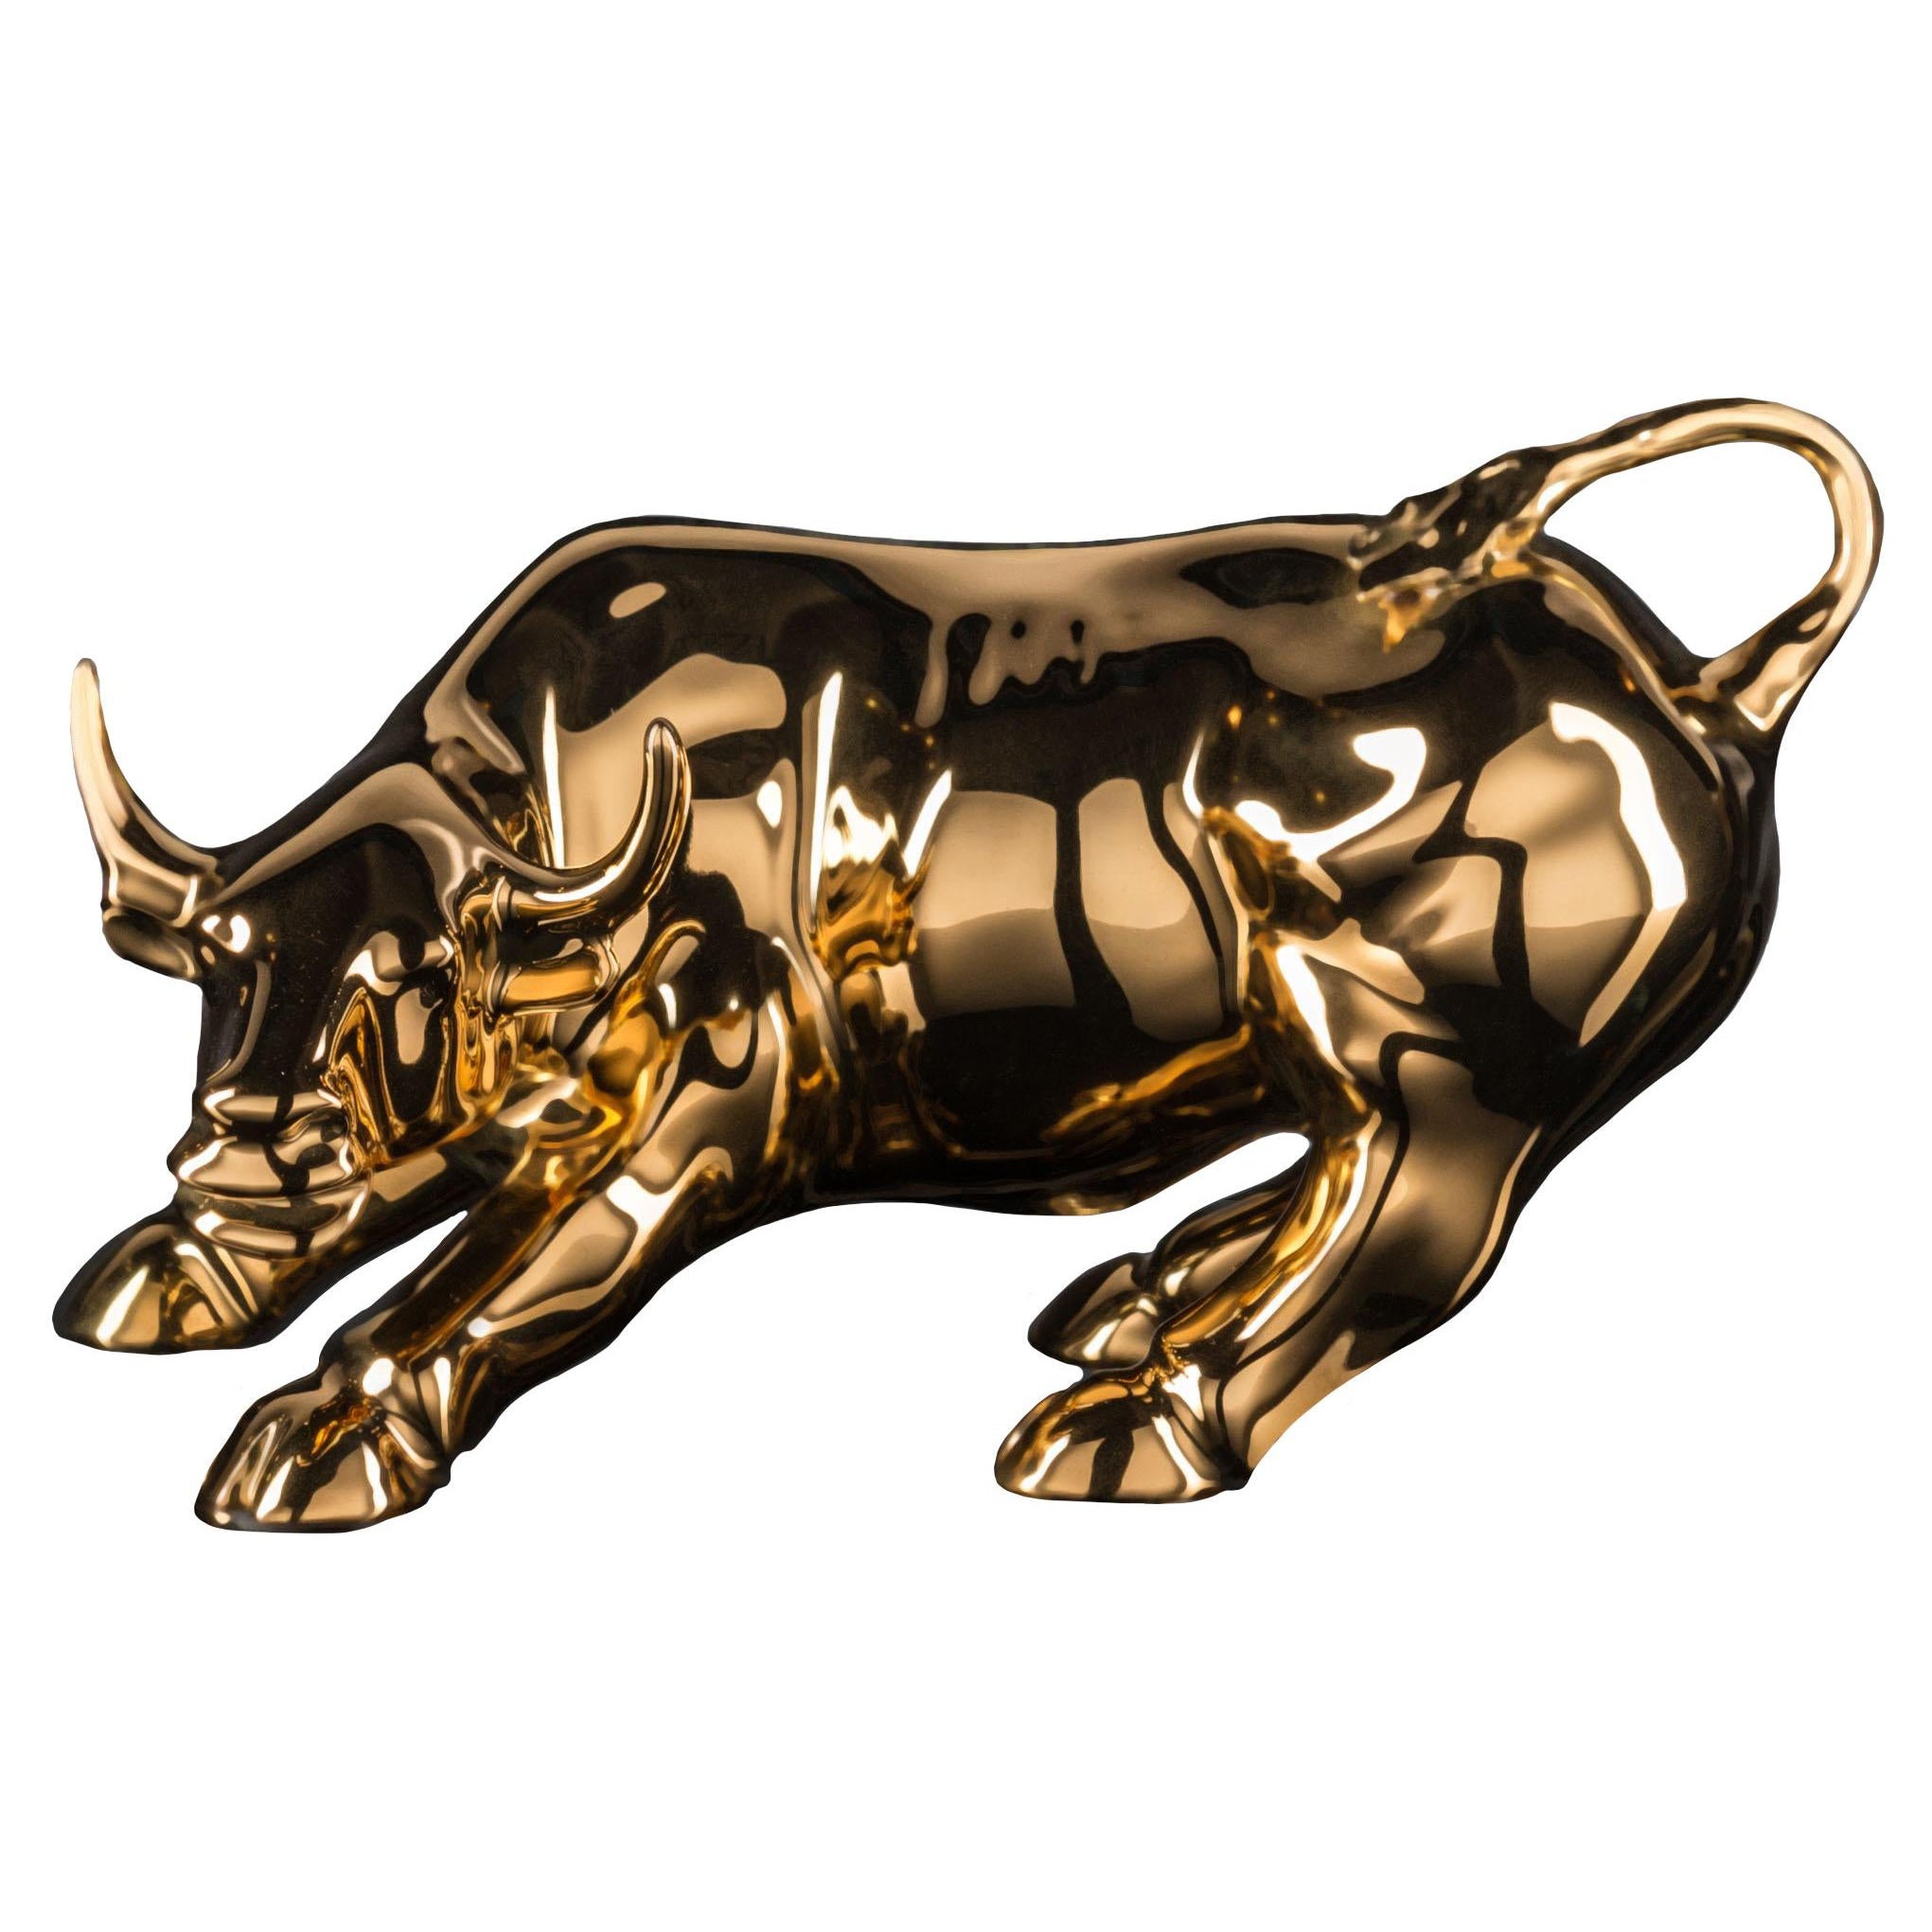 Wall Street Bull Small in Ceramic, Shiny Gold 24K, Italy